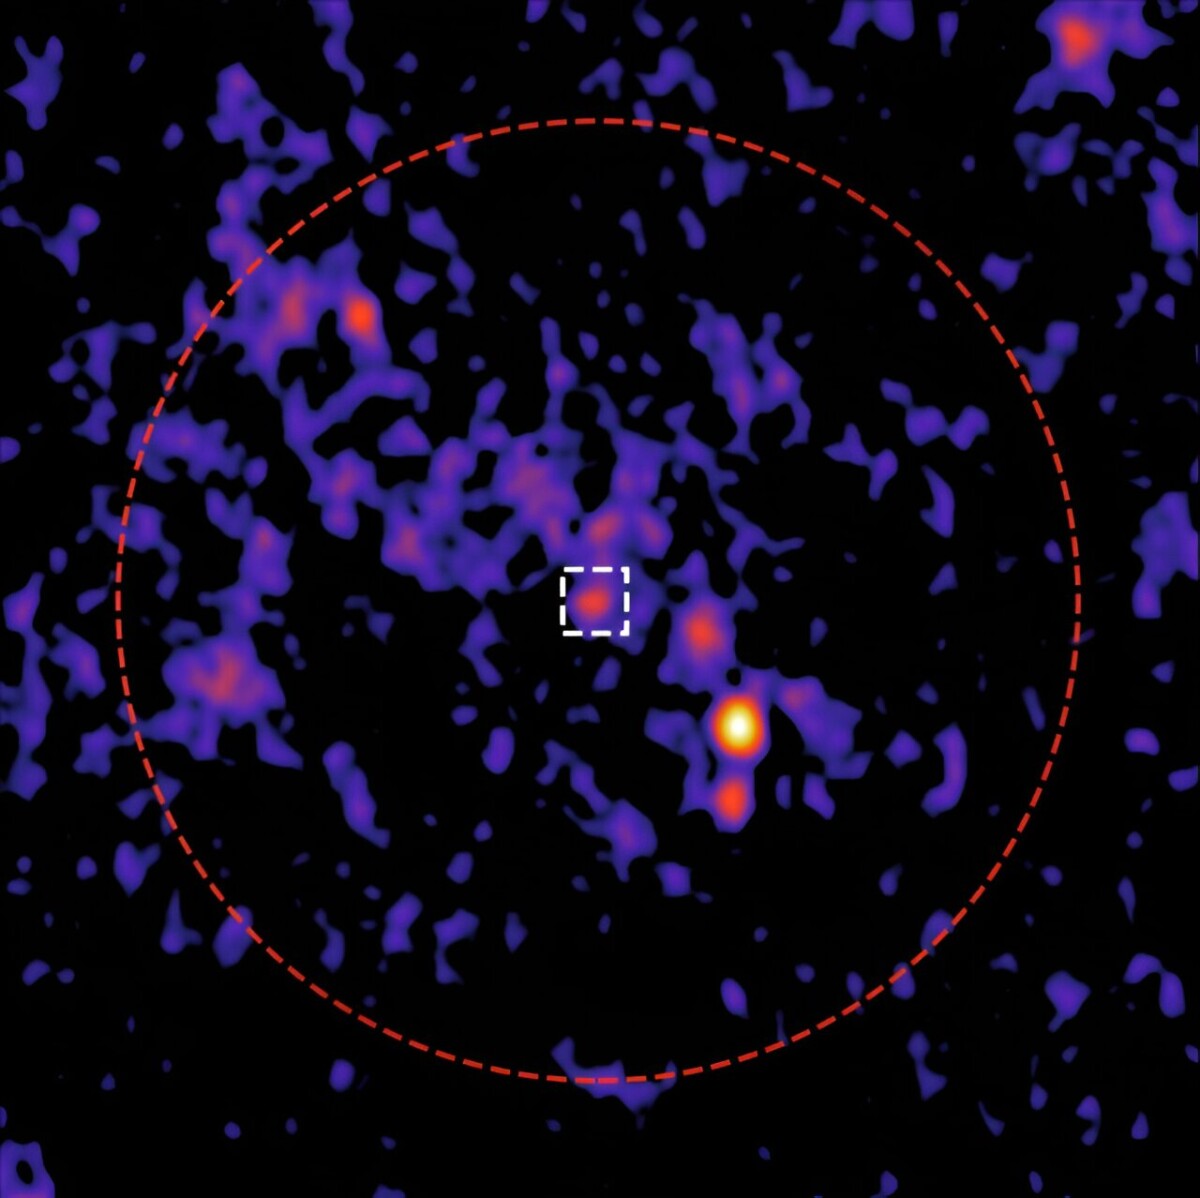 immagine radio più sensibile mai vista di un antico ammasso stellare